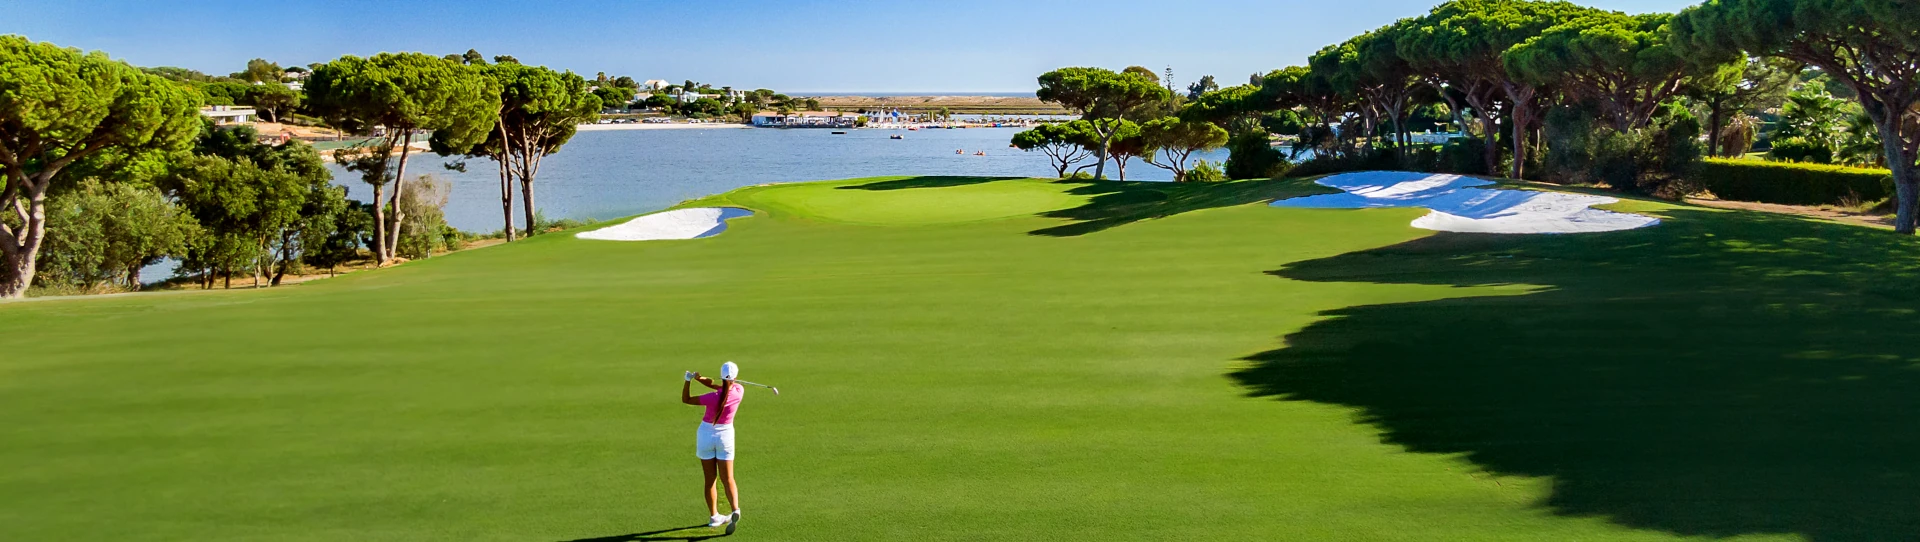 Portugal golf courses - Quinta do Lago South - Photo 1